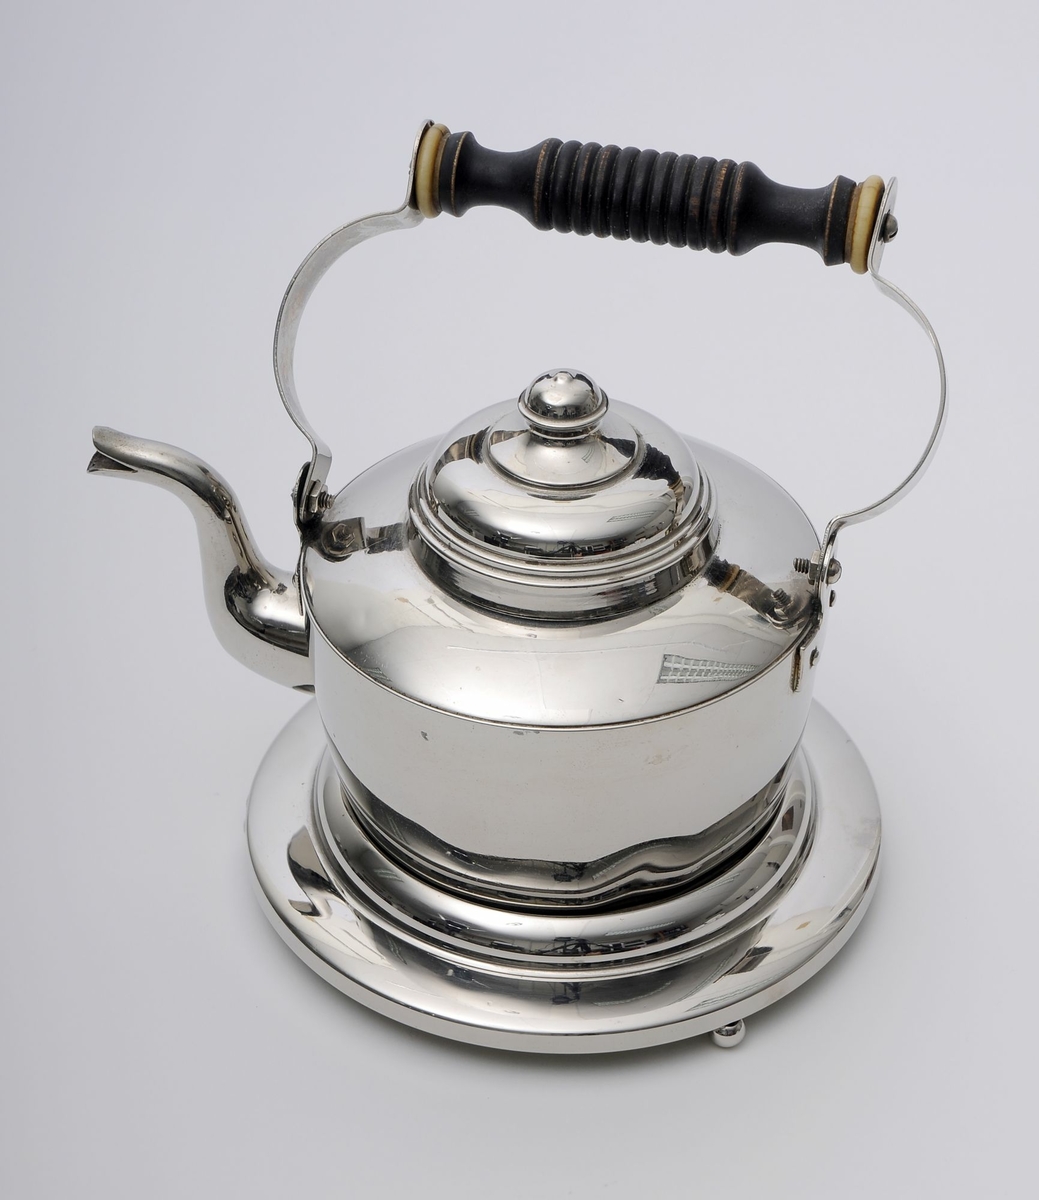 Kjele til å servere te eller kaffe i. Kjelen har en ring som den skal settes på for å forhindre skade på bord og lignende. 